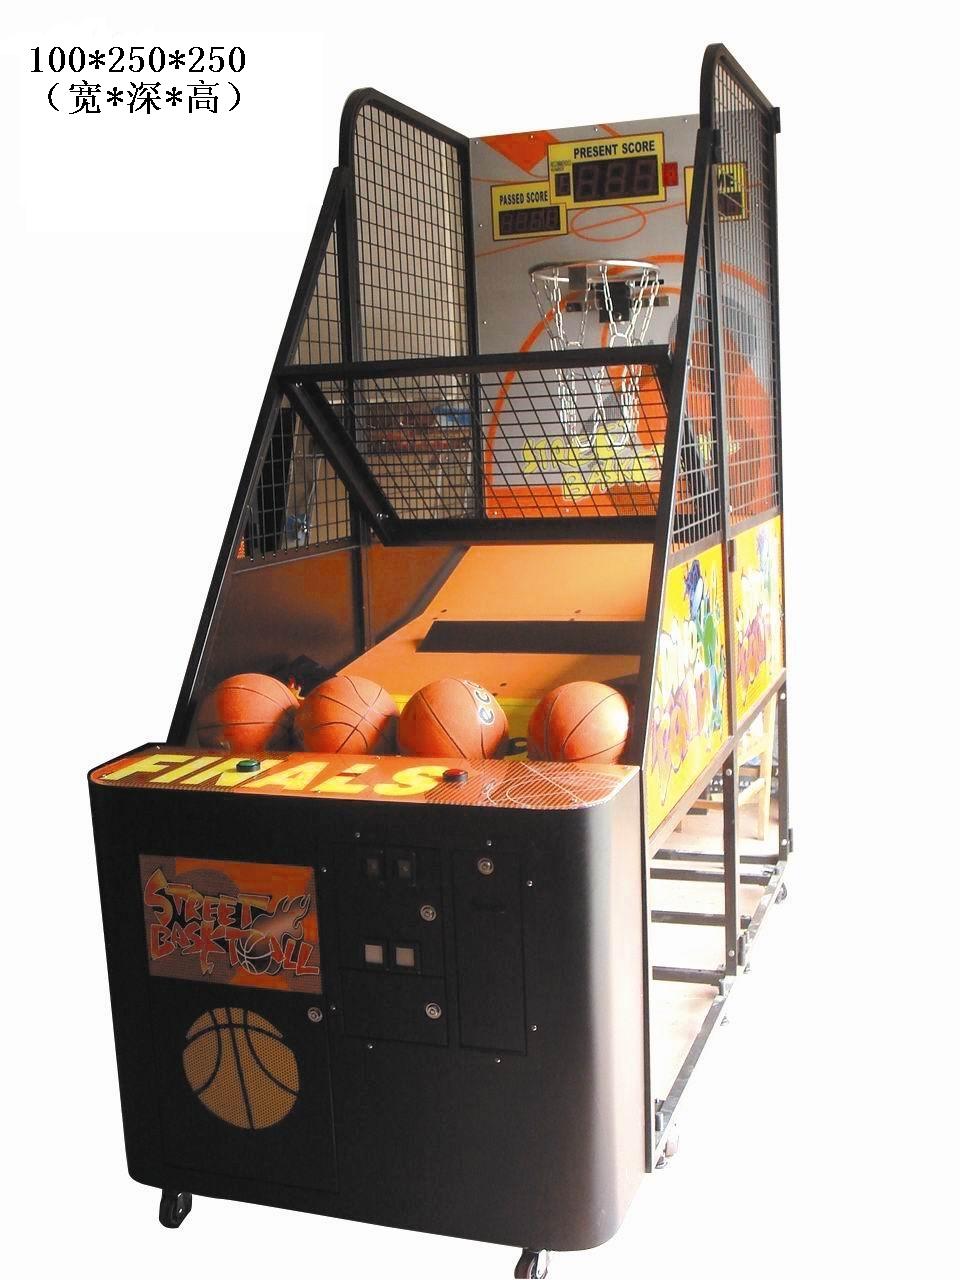 二手篮球机游戏机回收公司 高价回收篮球机游戏机，现金收购 篮球机游戏机回收联系电话